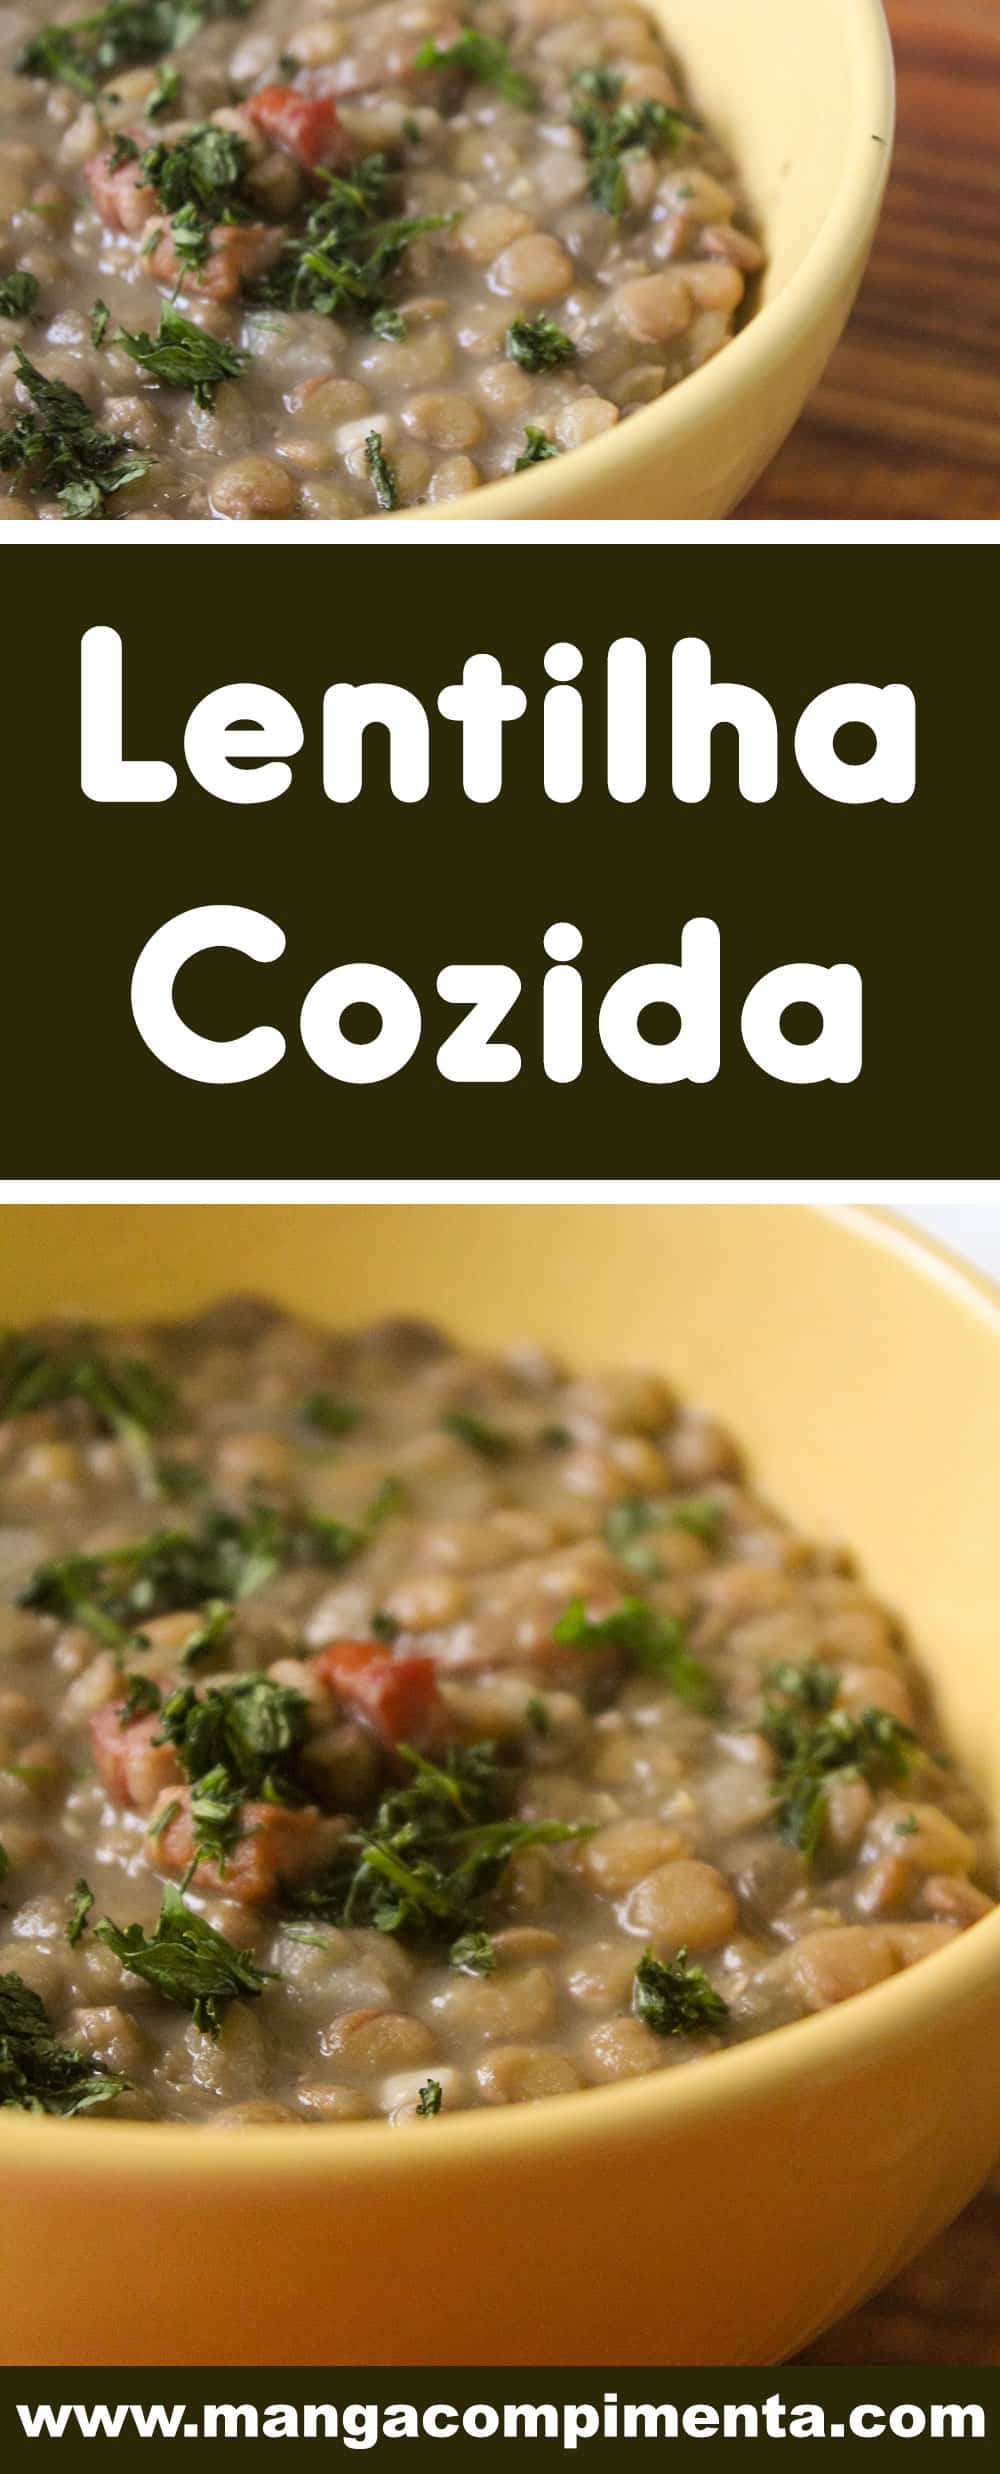 Receita de Lentilha Cozida - um prato básico e simples de preparar em casa para a família!